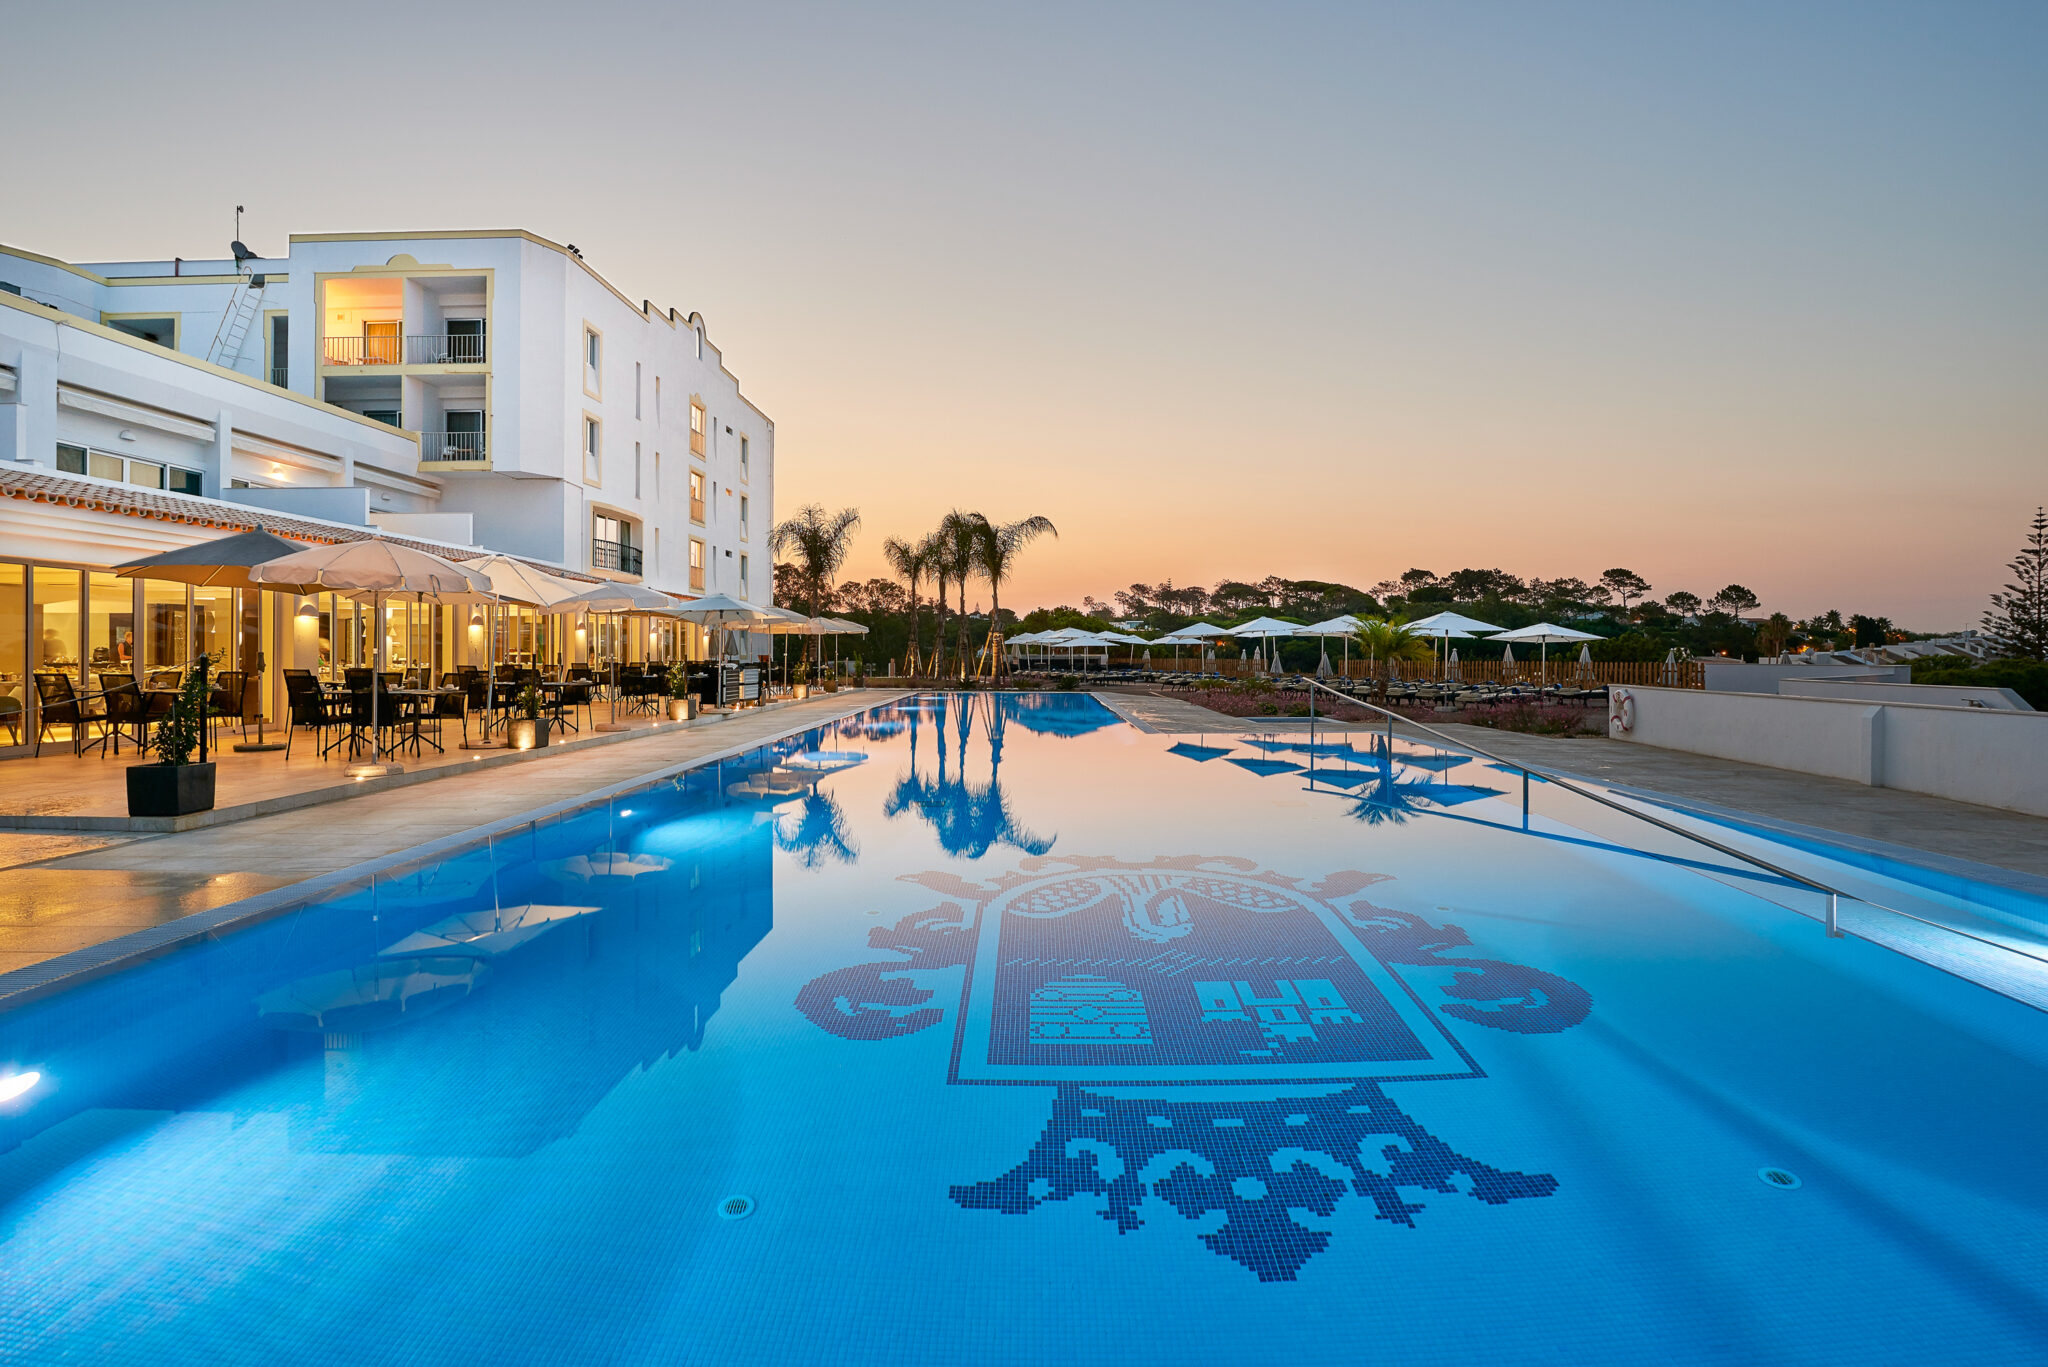 Outdoor Pool at sunset at Hotel Dona Filipa